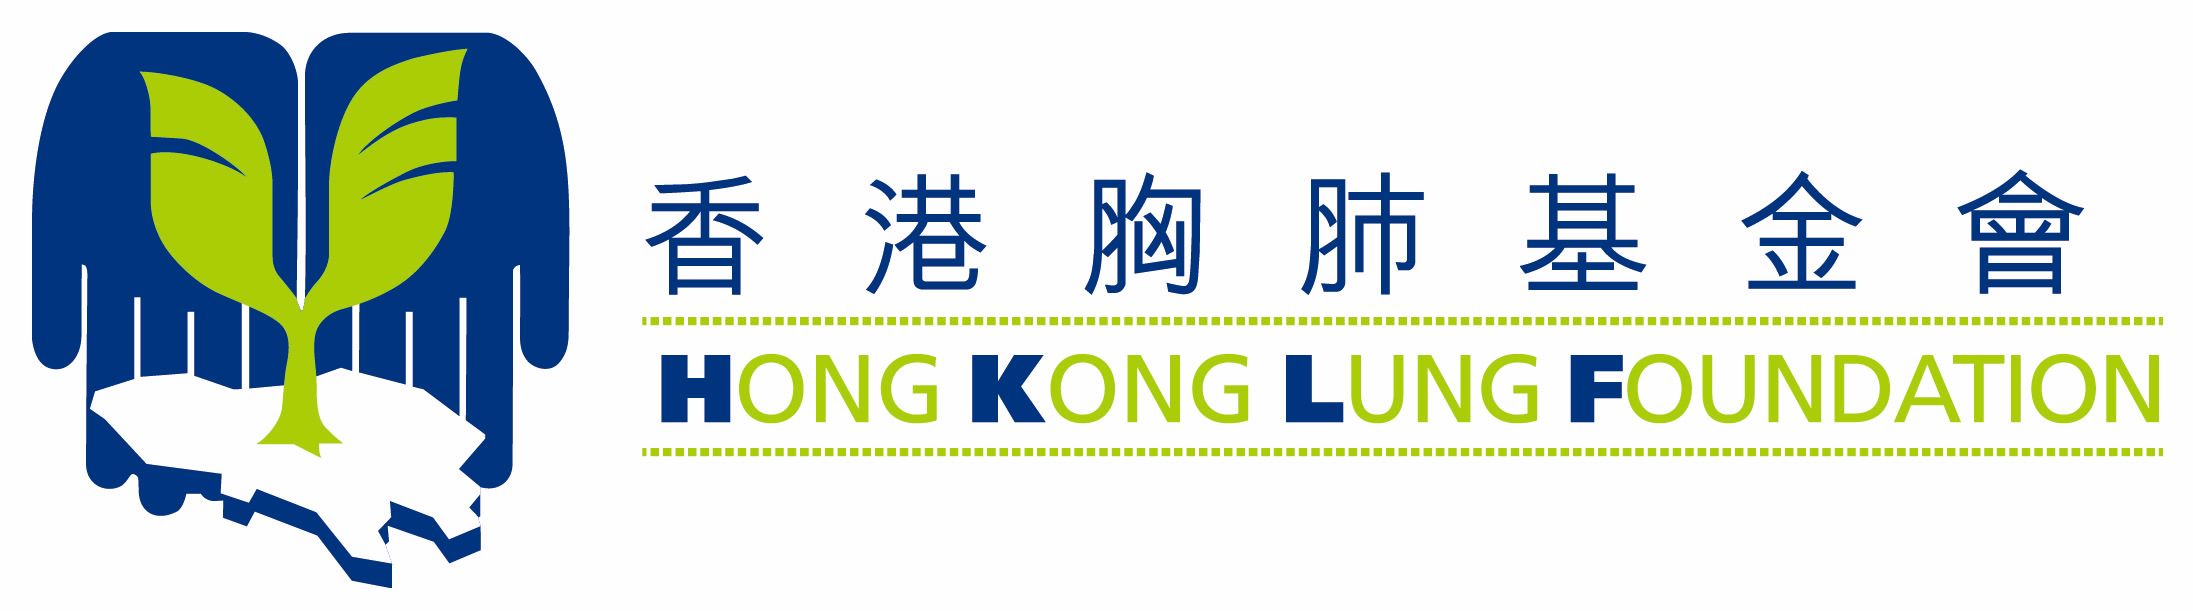 Hong Kong Lung Foundation